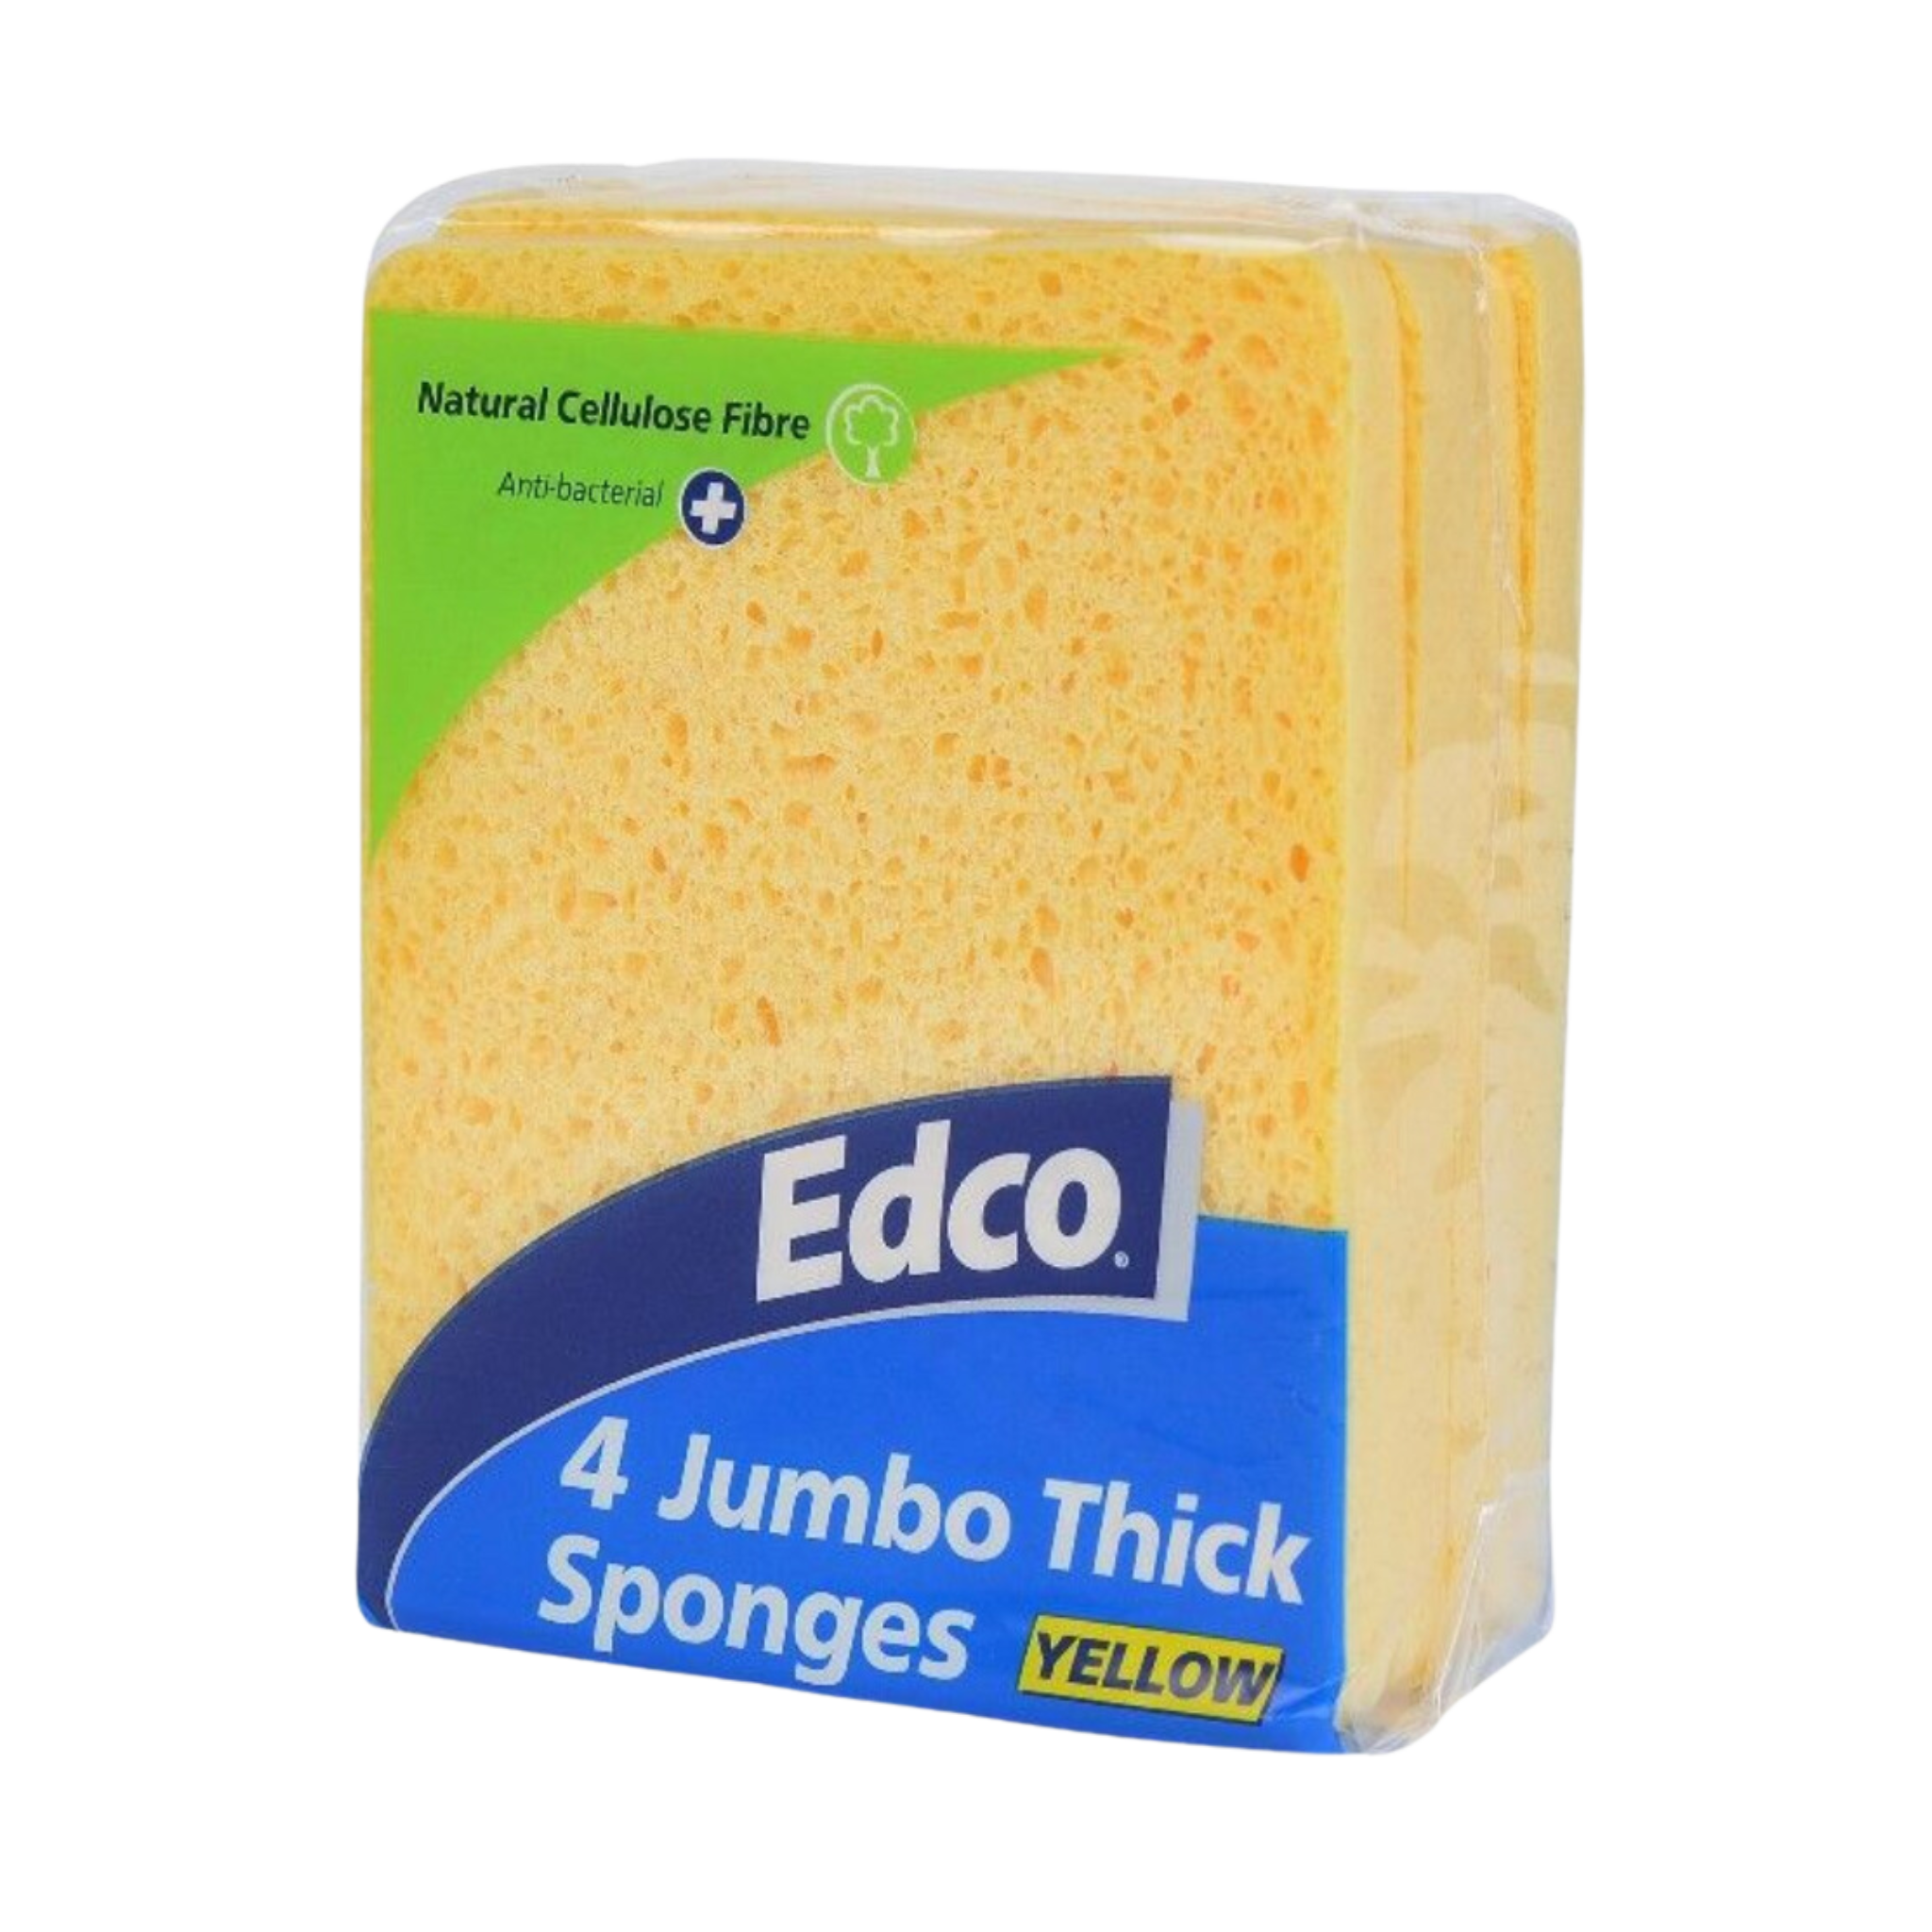 Edco Jumbo Sponge 4 Pack - Yellow